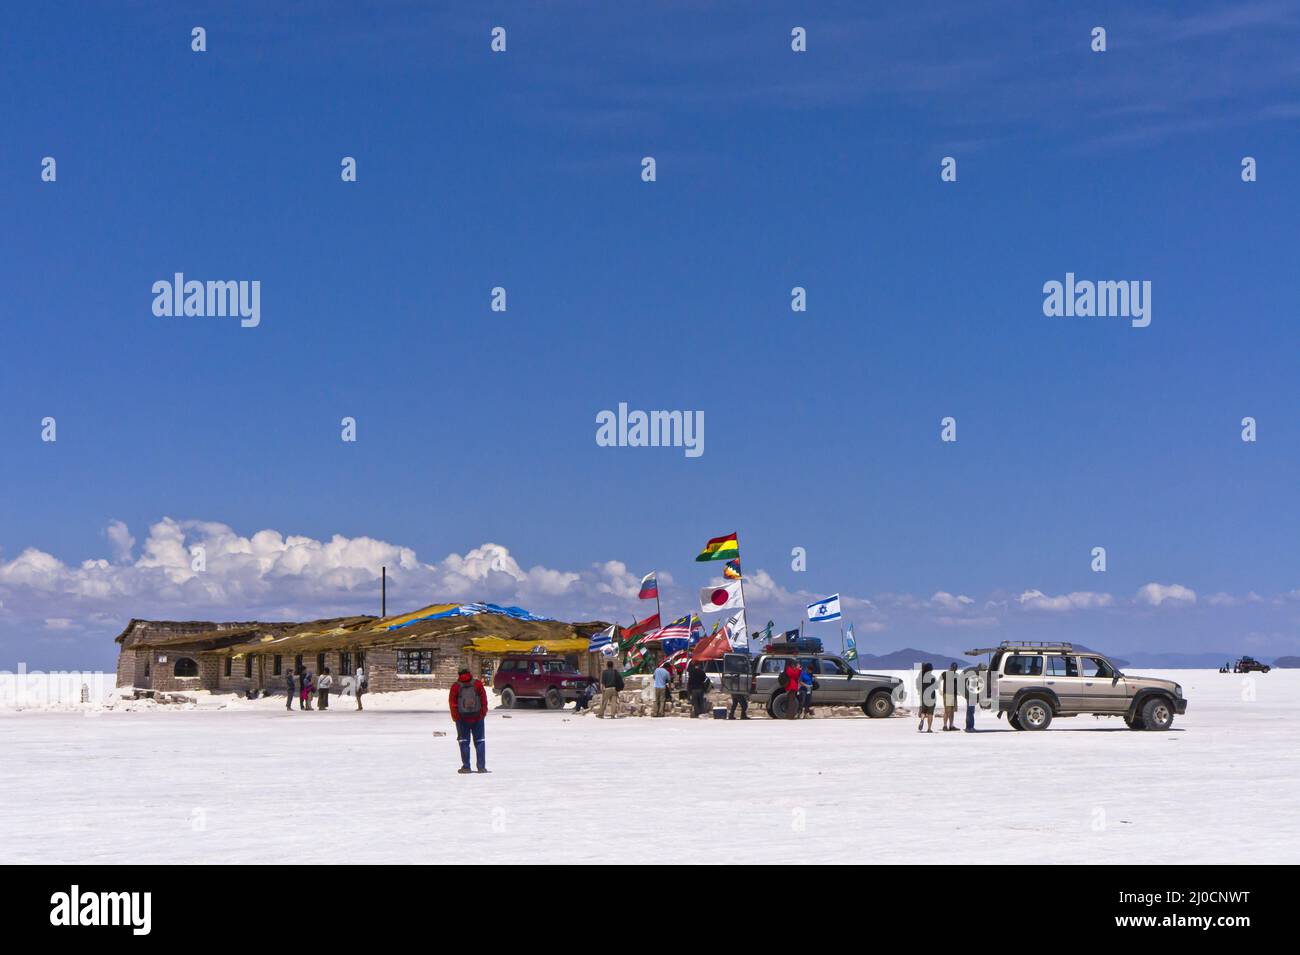 Camp touristique, Salar de Uyuni, Bolivie, Amérique du Sud Banque D'Images